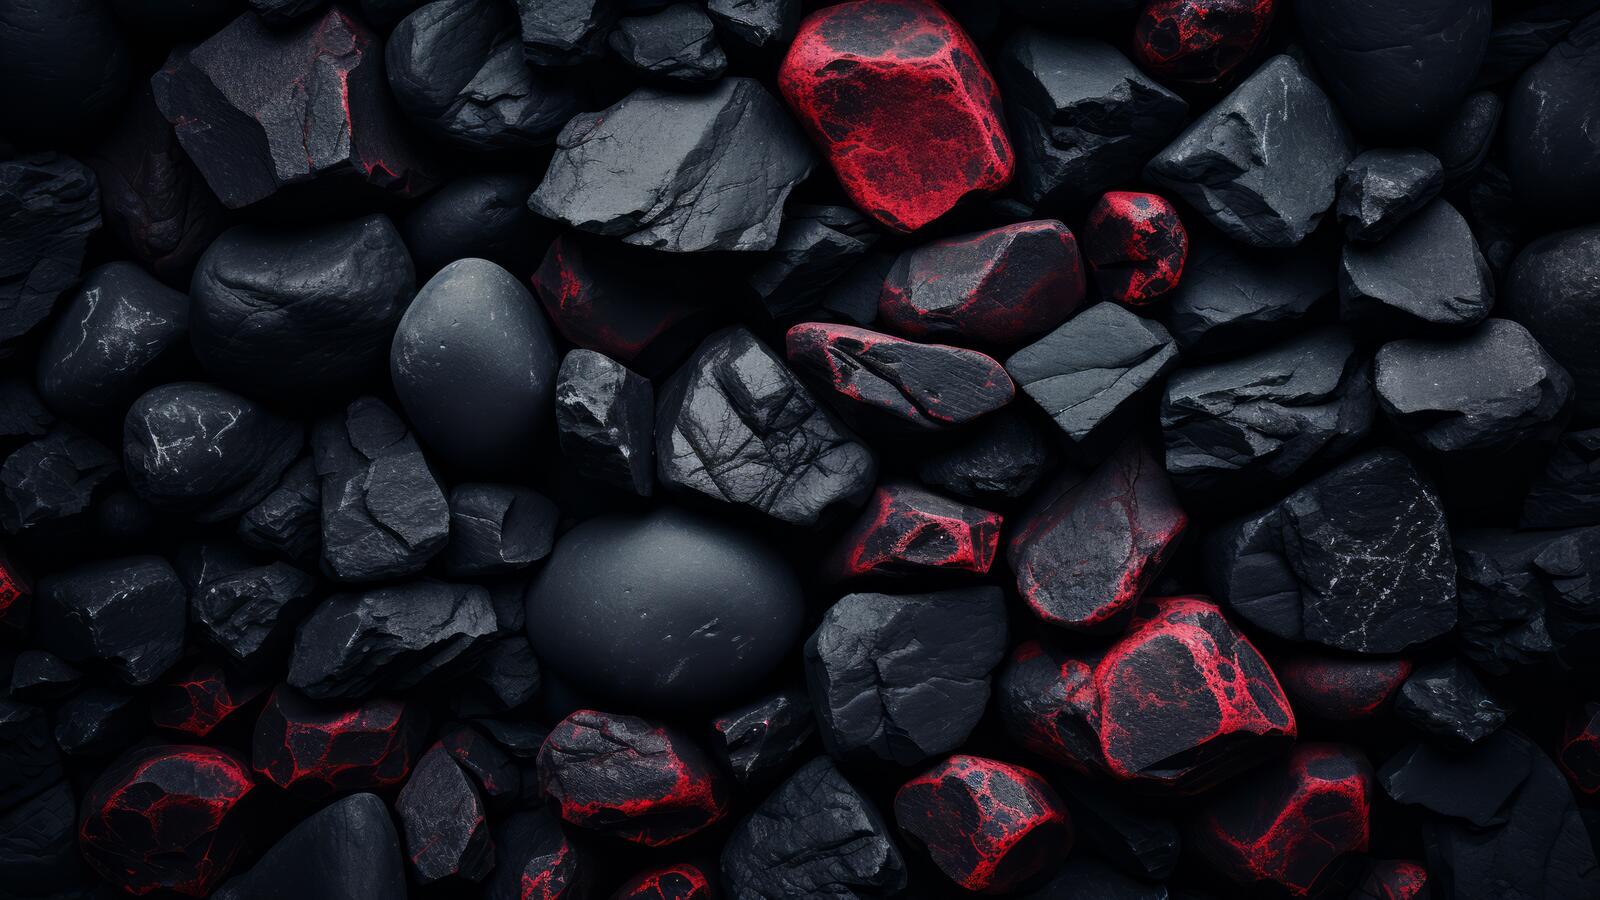 Free photo Reddish stones among the black